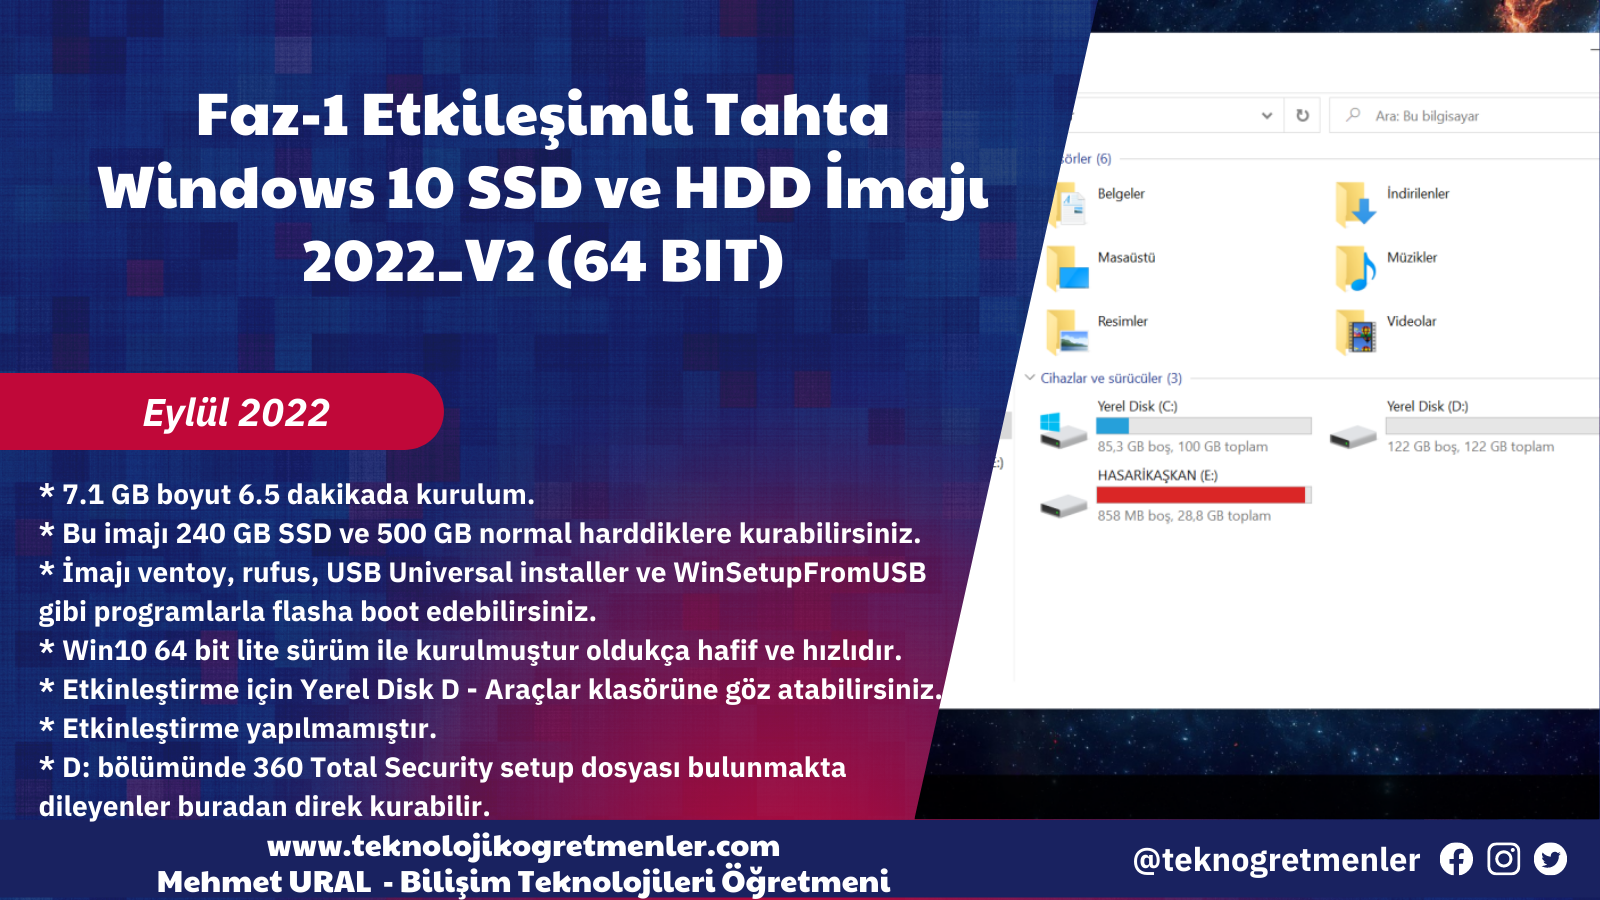 Faz-1 Etkileşimli Tahta Windows 10 SSD ve HDD İmajı 2022_V2 (64 BIT) – Eylül 2022